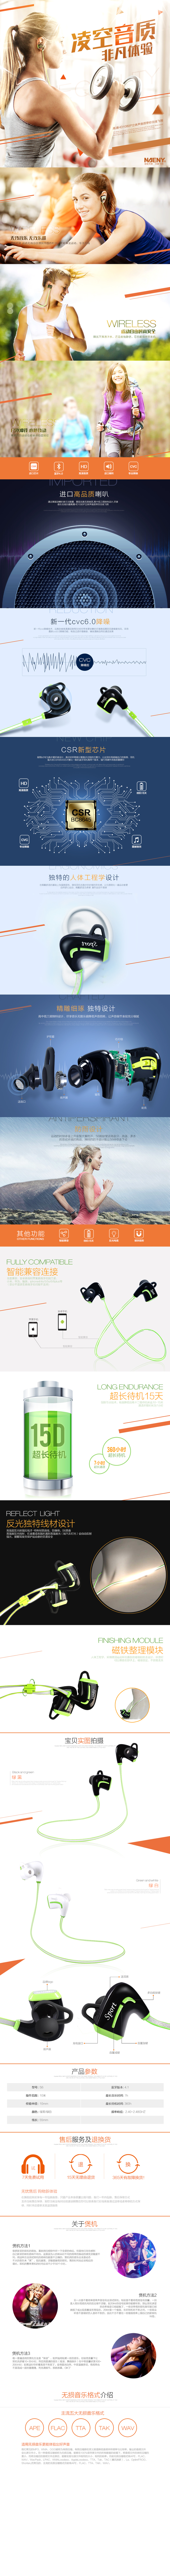 淘宝美工乐琪3c数码 耐翔蓝牙运动型耳机详情模板科技感非原创作品